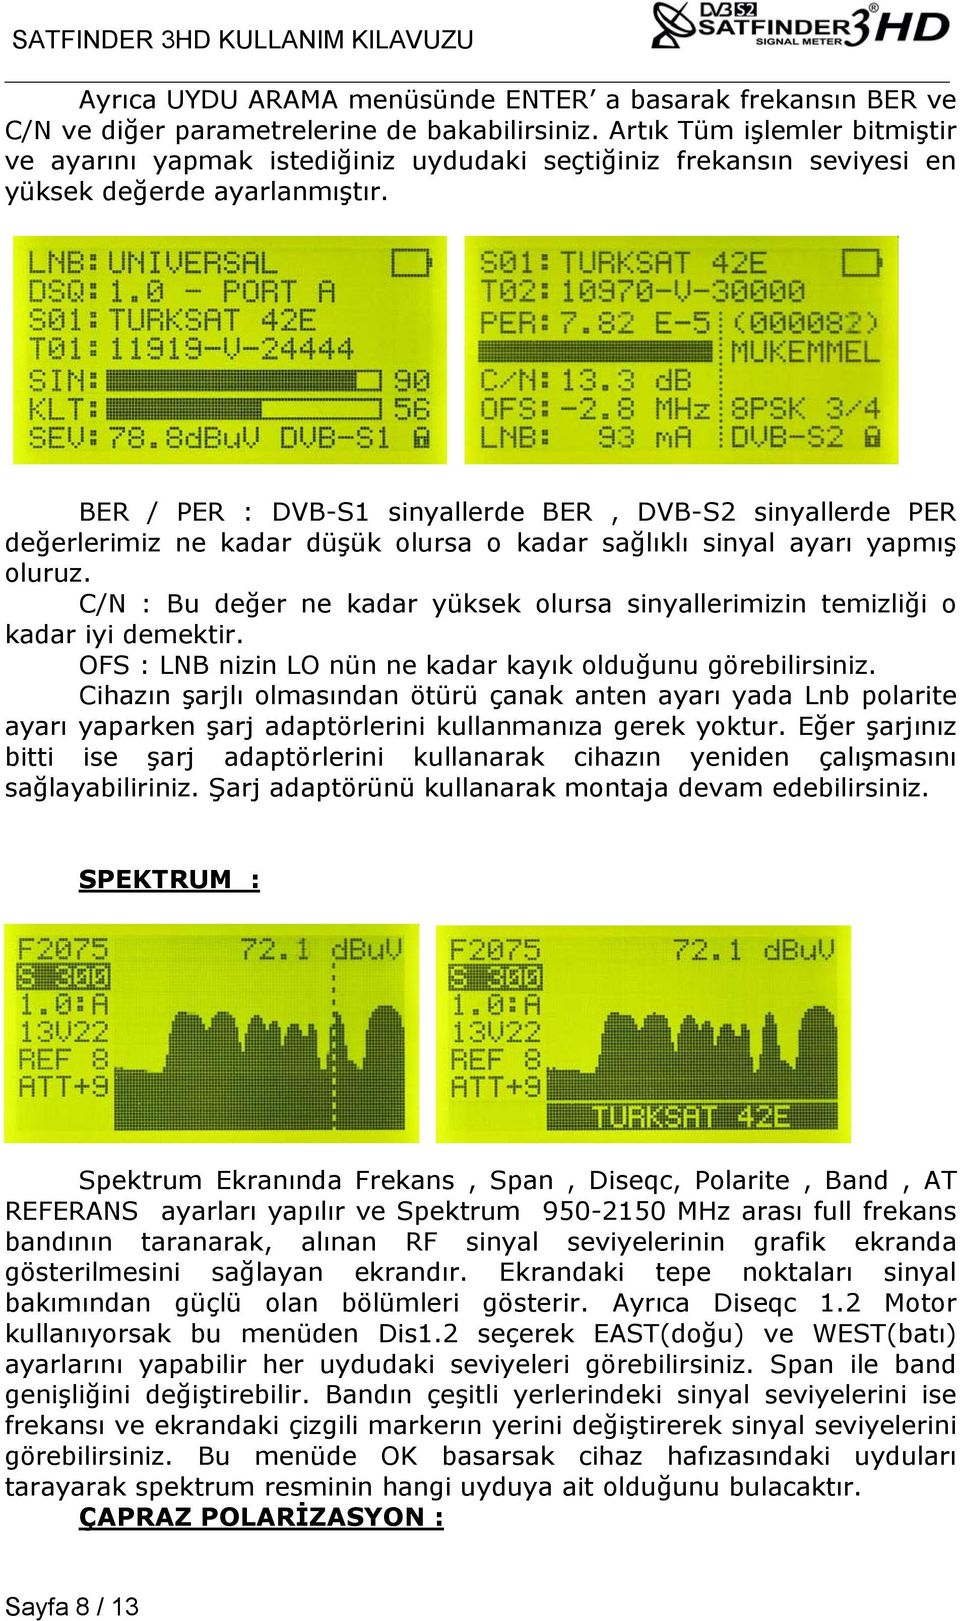 BER / PER : DVB-S1 sinyallerde BER, DVB-S2 sinyallerde PER değerlerimiz ne kadar düşük olursa o kadar sağlıklı sinyal ayarı yapmış oluruz.